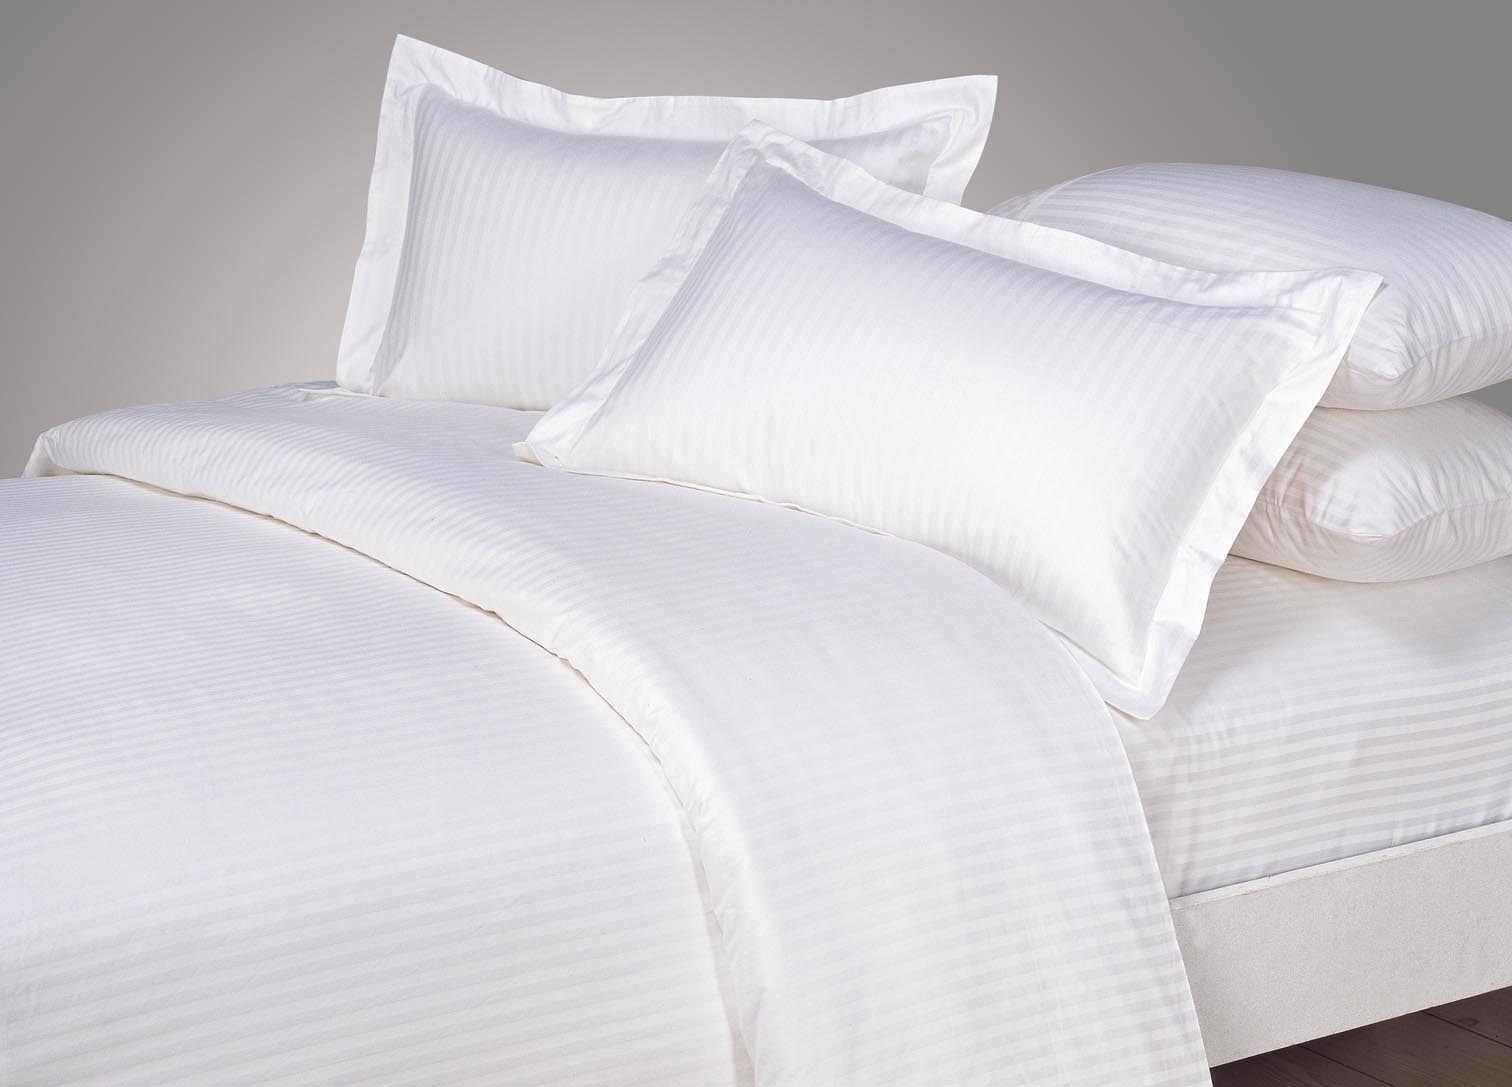 Vải cotton T300 là chất liệu phù hợp với phân khúc khách sạn 4-5 sao